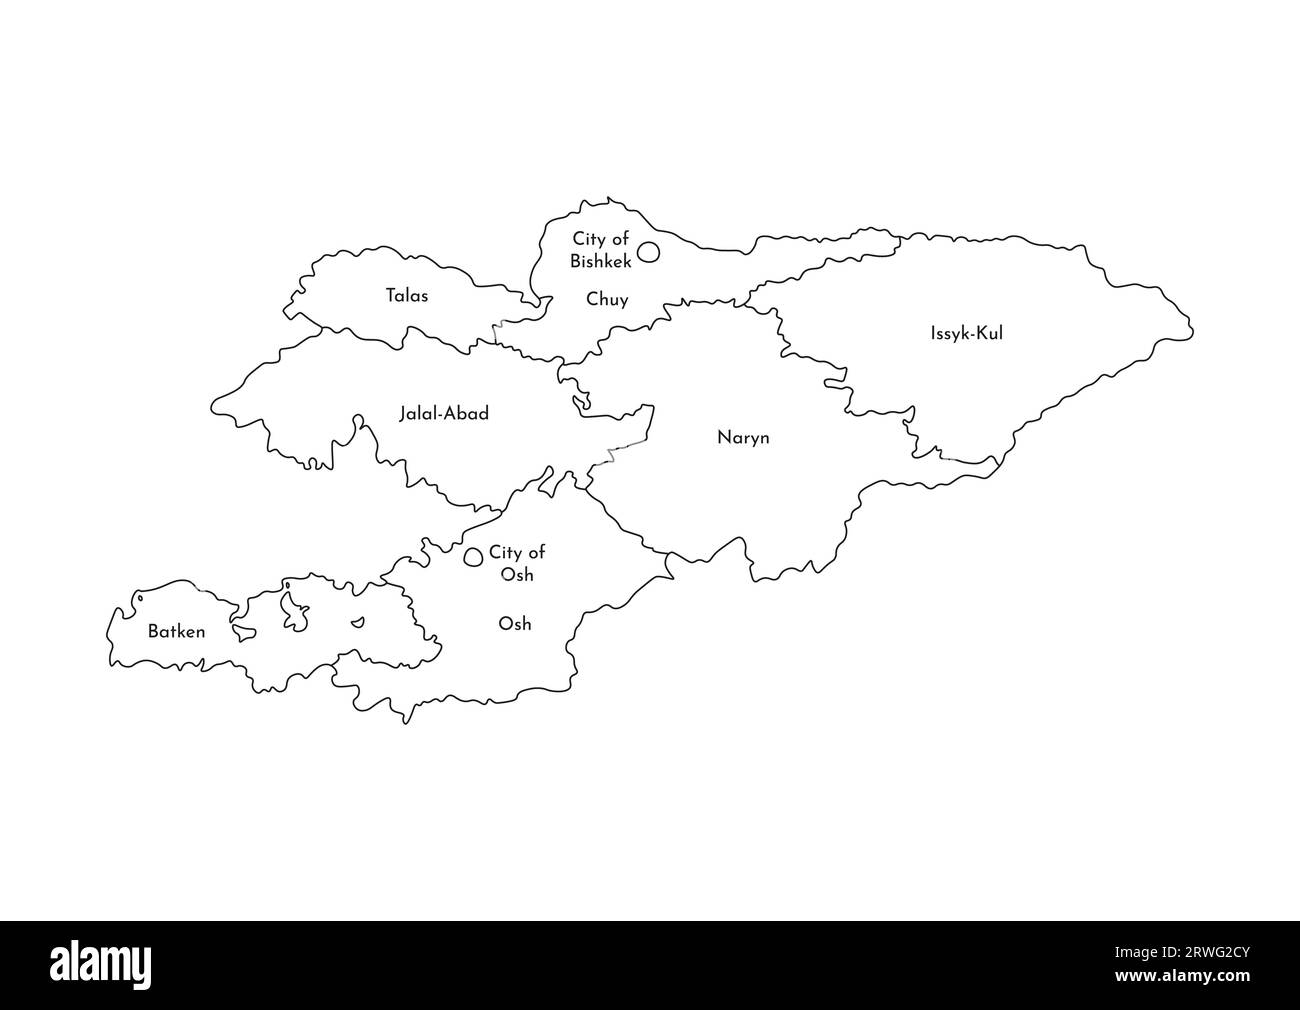 Illustrazione vettoriale isolata della mappa amministrativa semplificata del Kirghizistan. Confini e nomi delle regioni. Silhouette nere. Illustrazione Vettoriale